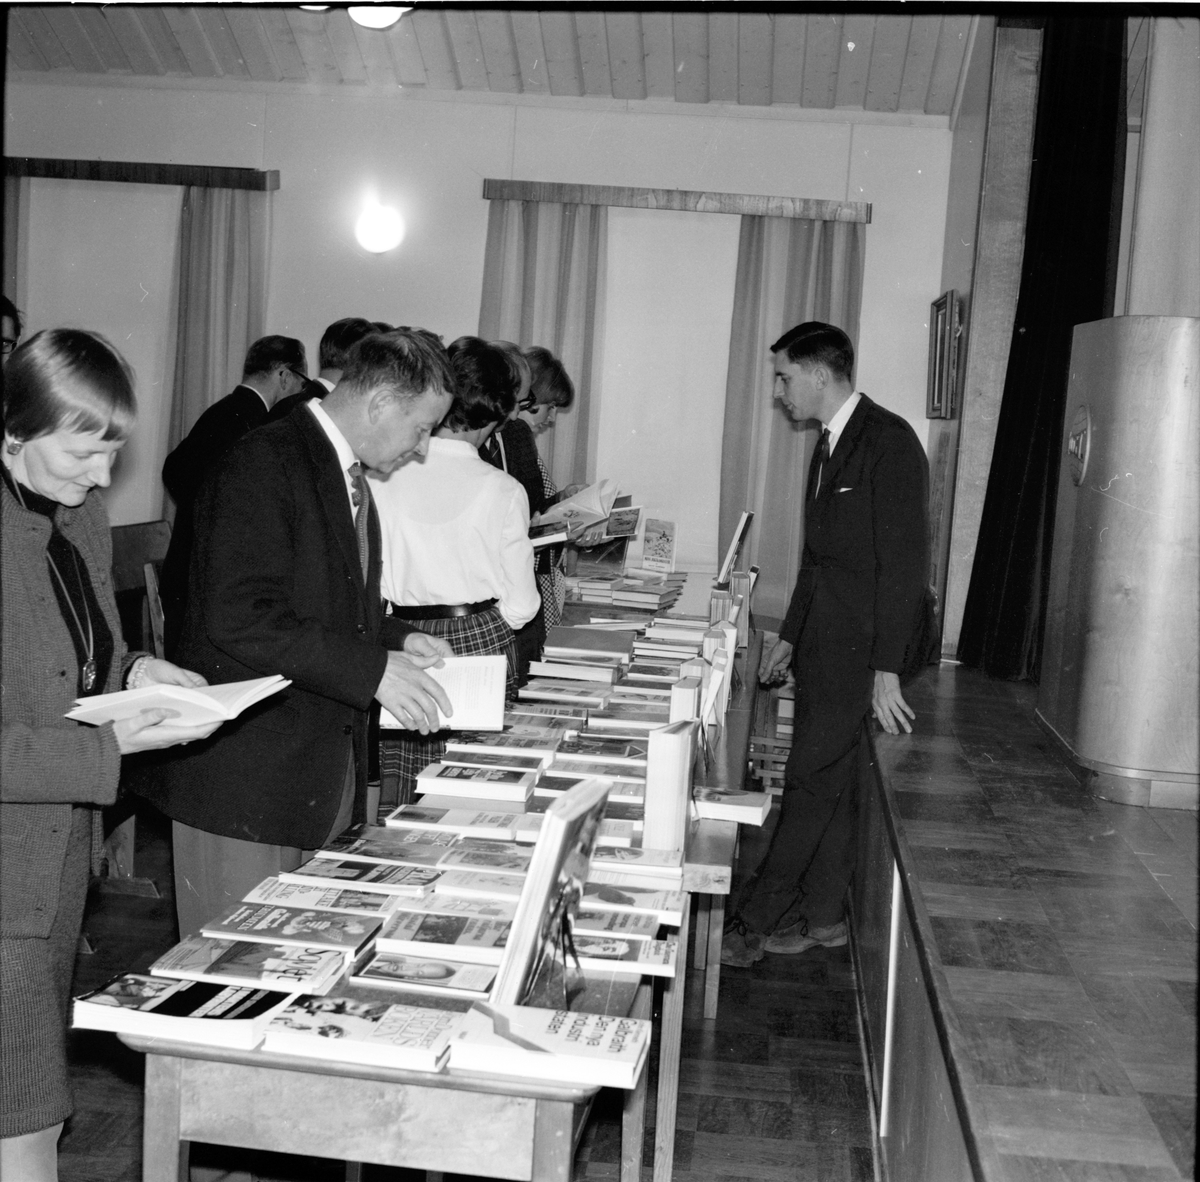 Arbrå,
Bokafton i Flästa,
November 1968